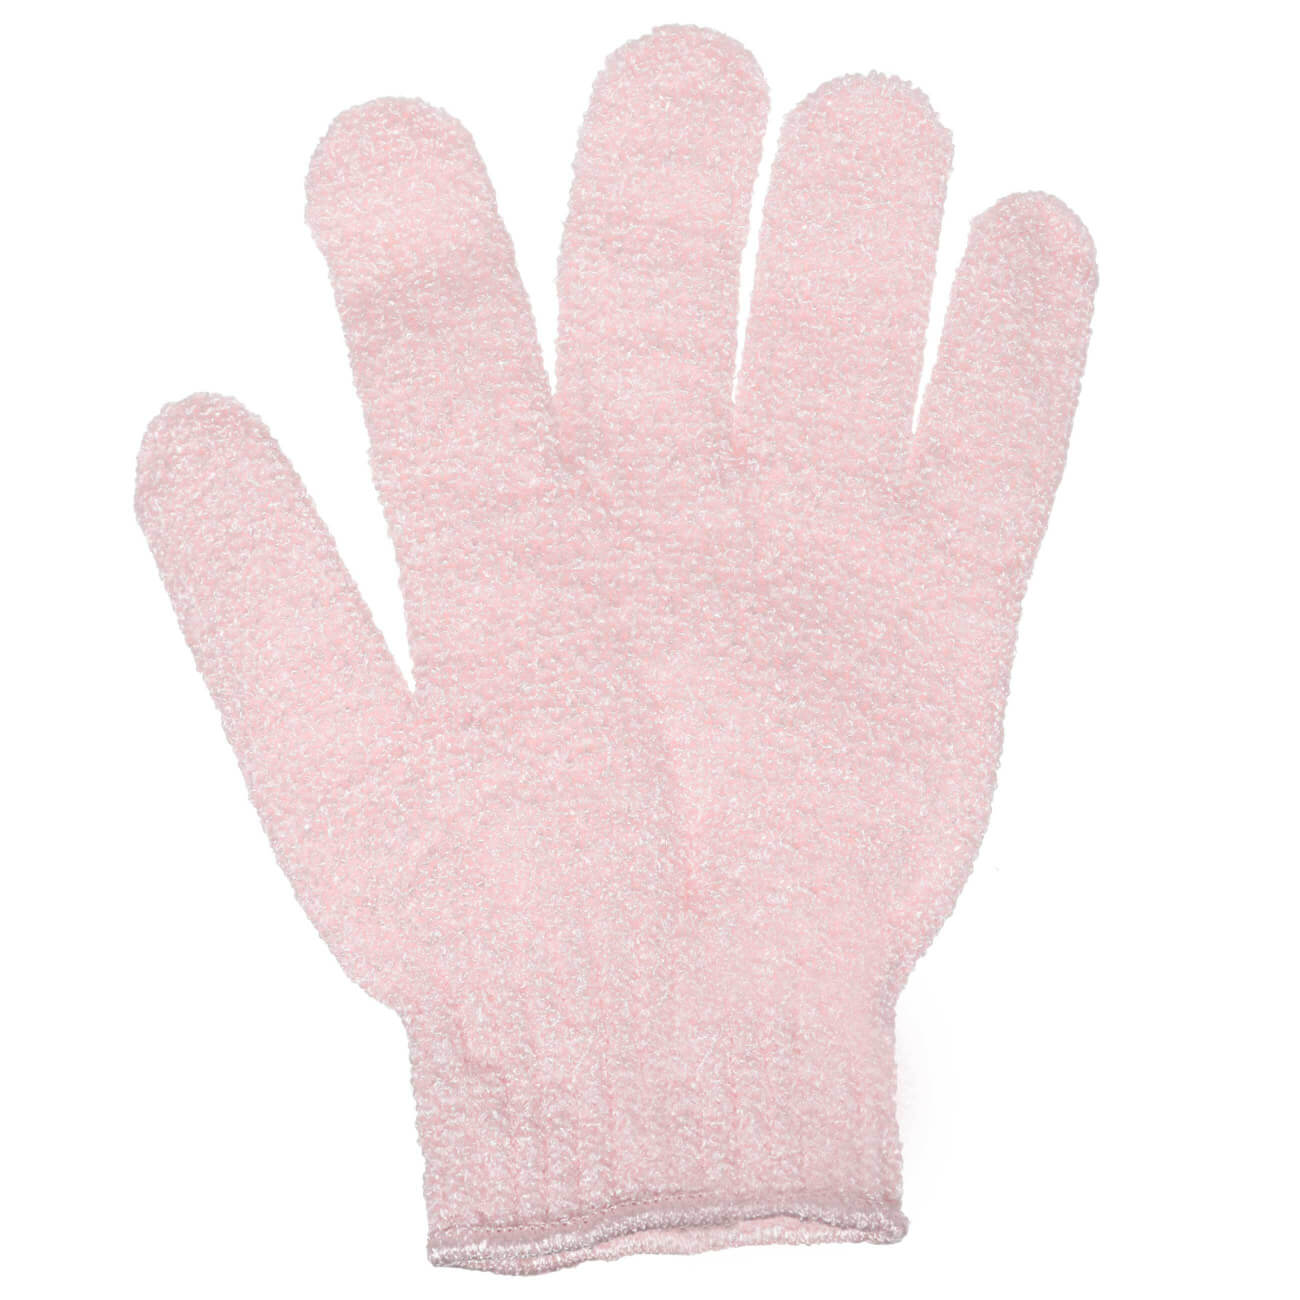 Перчатка для мытья тела, 20 см, 2 шт, отшелушивающая, нейлон, пудровая, Glamor перчатка для мытья тела 20 см 2 шт отшелушивающая нейлон пудровая glamor